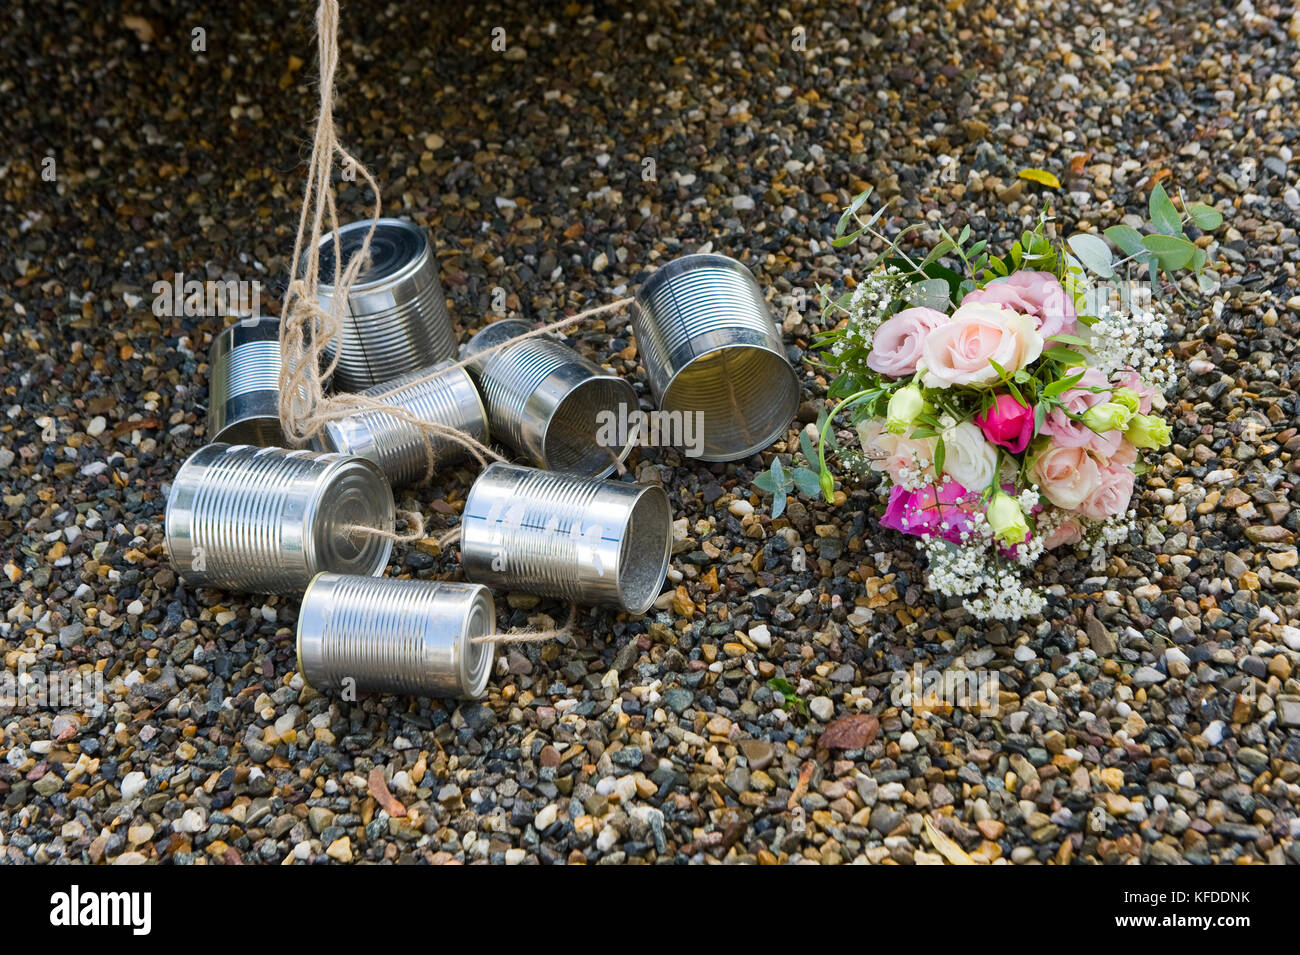 Blechdosen und ein brautstrauß am Boden während einer Hochzeit Tag Stockfoto